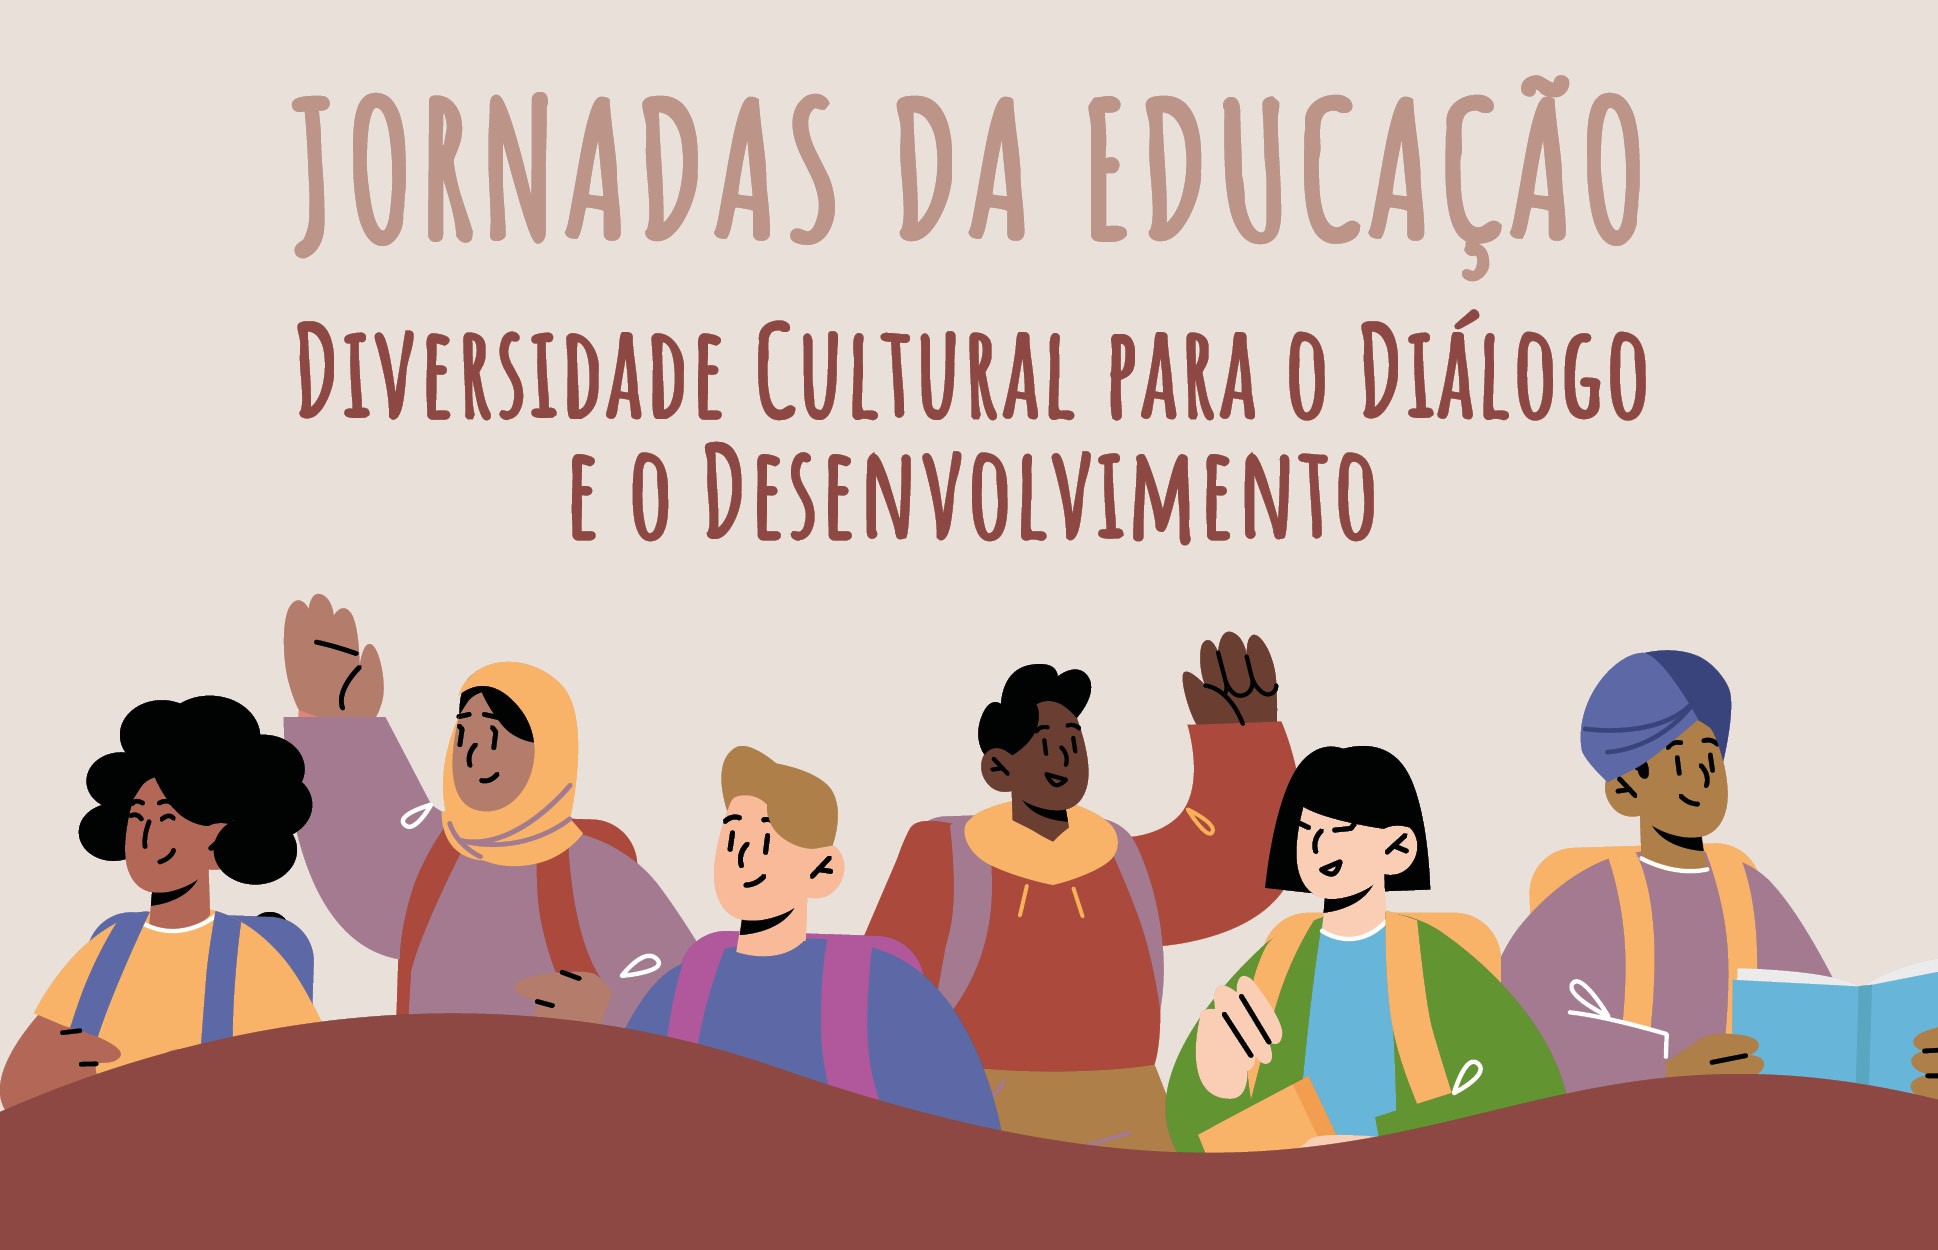 Diversidade cultural é o tema deste ano para as Jornadas da Educação